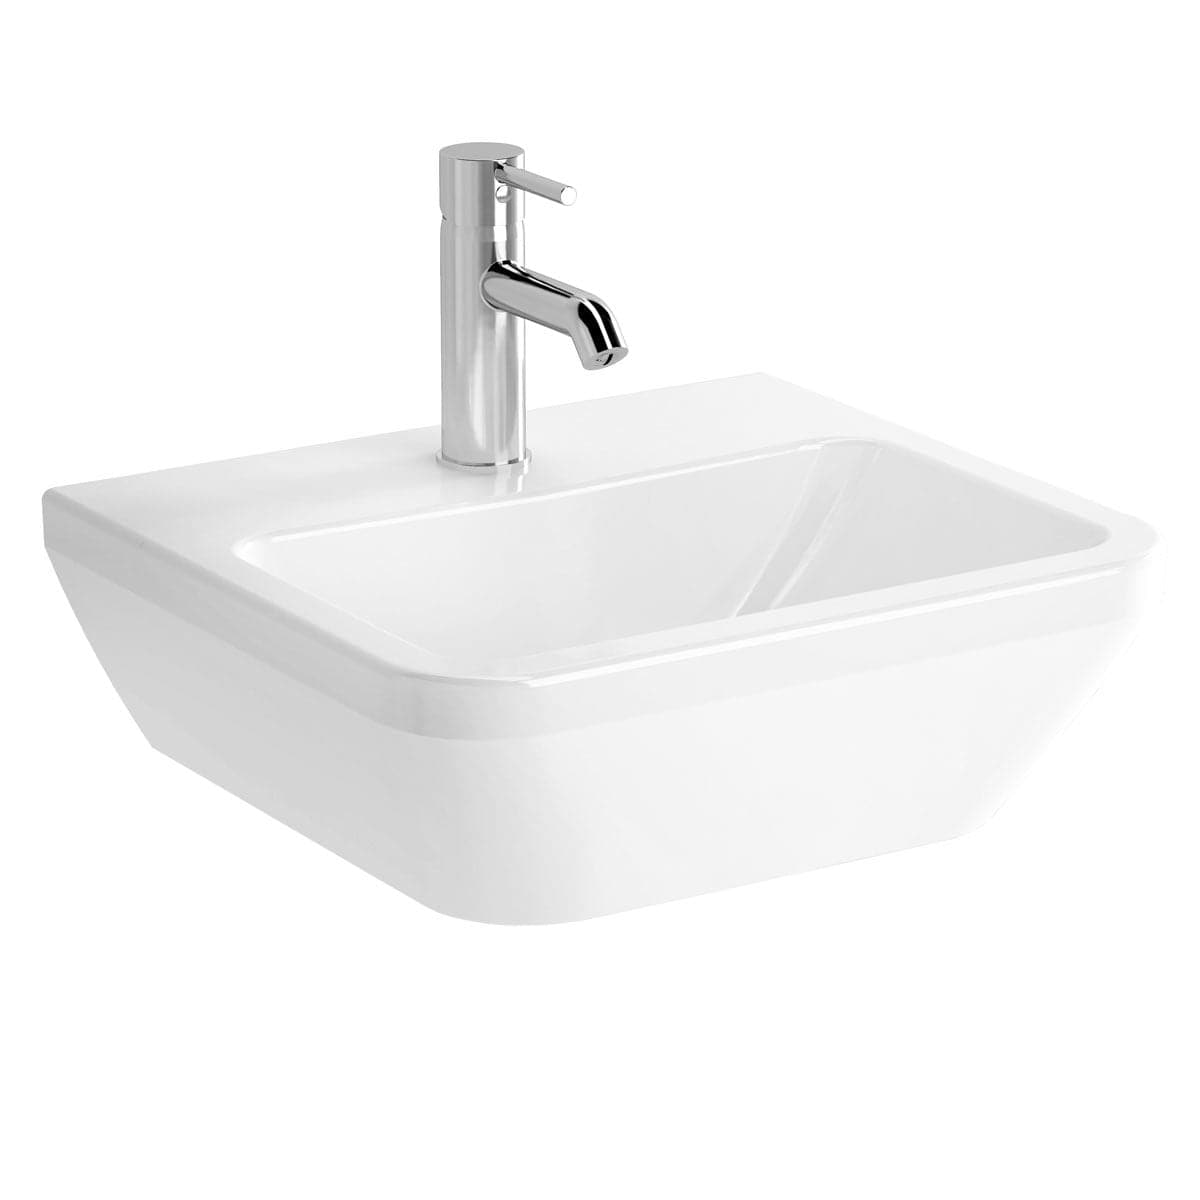 VitrA Integra Handwaschbecken 45 cm eckig Weiß Hochglanz VitrA